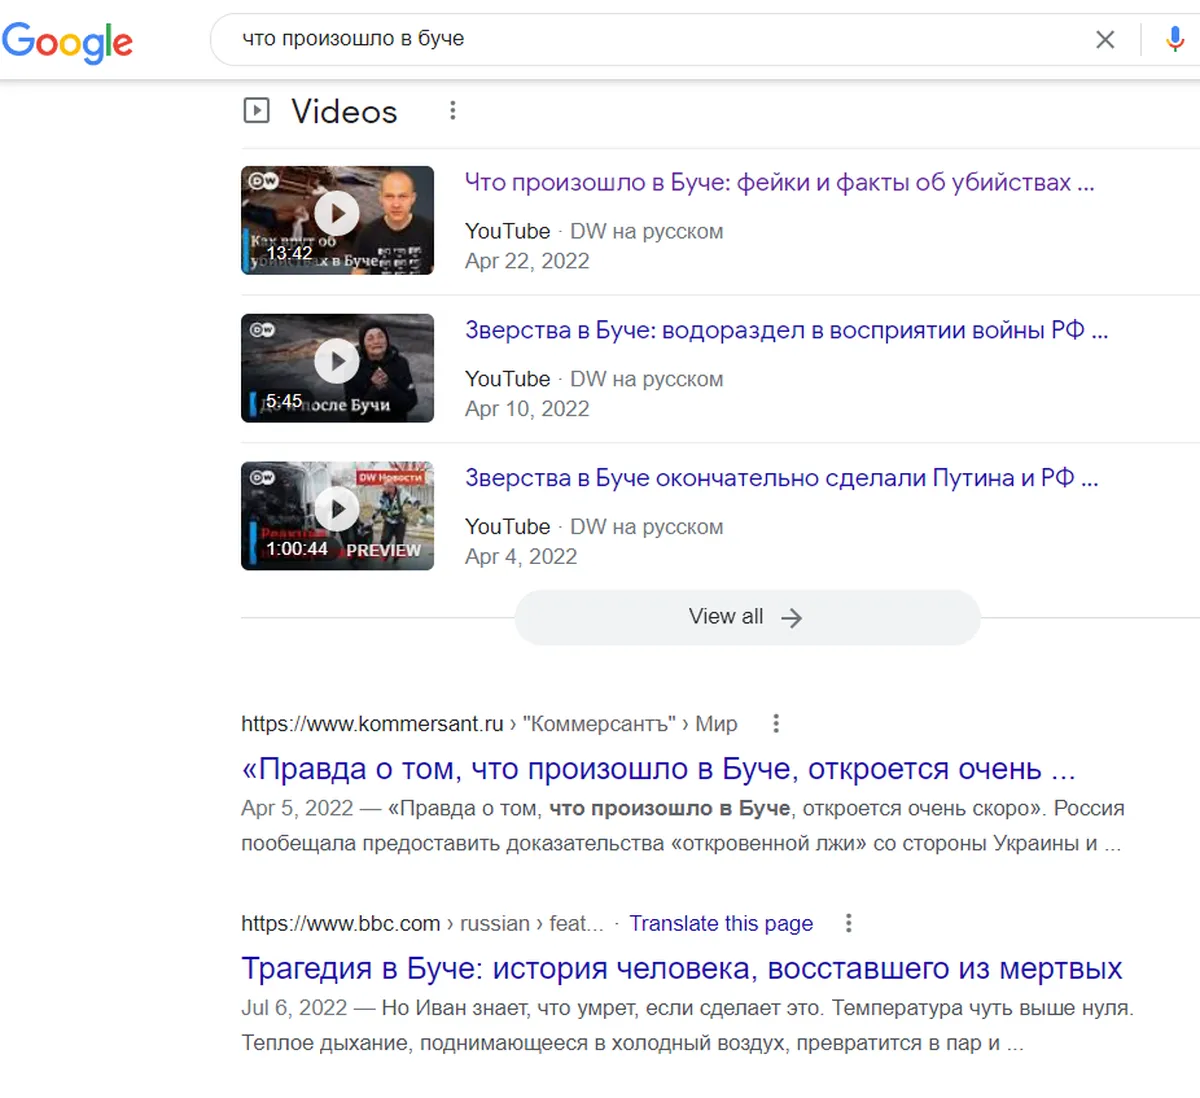 На запрос «что произошло в Буче» Google предлагает репортажи о трагедии